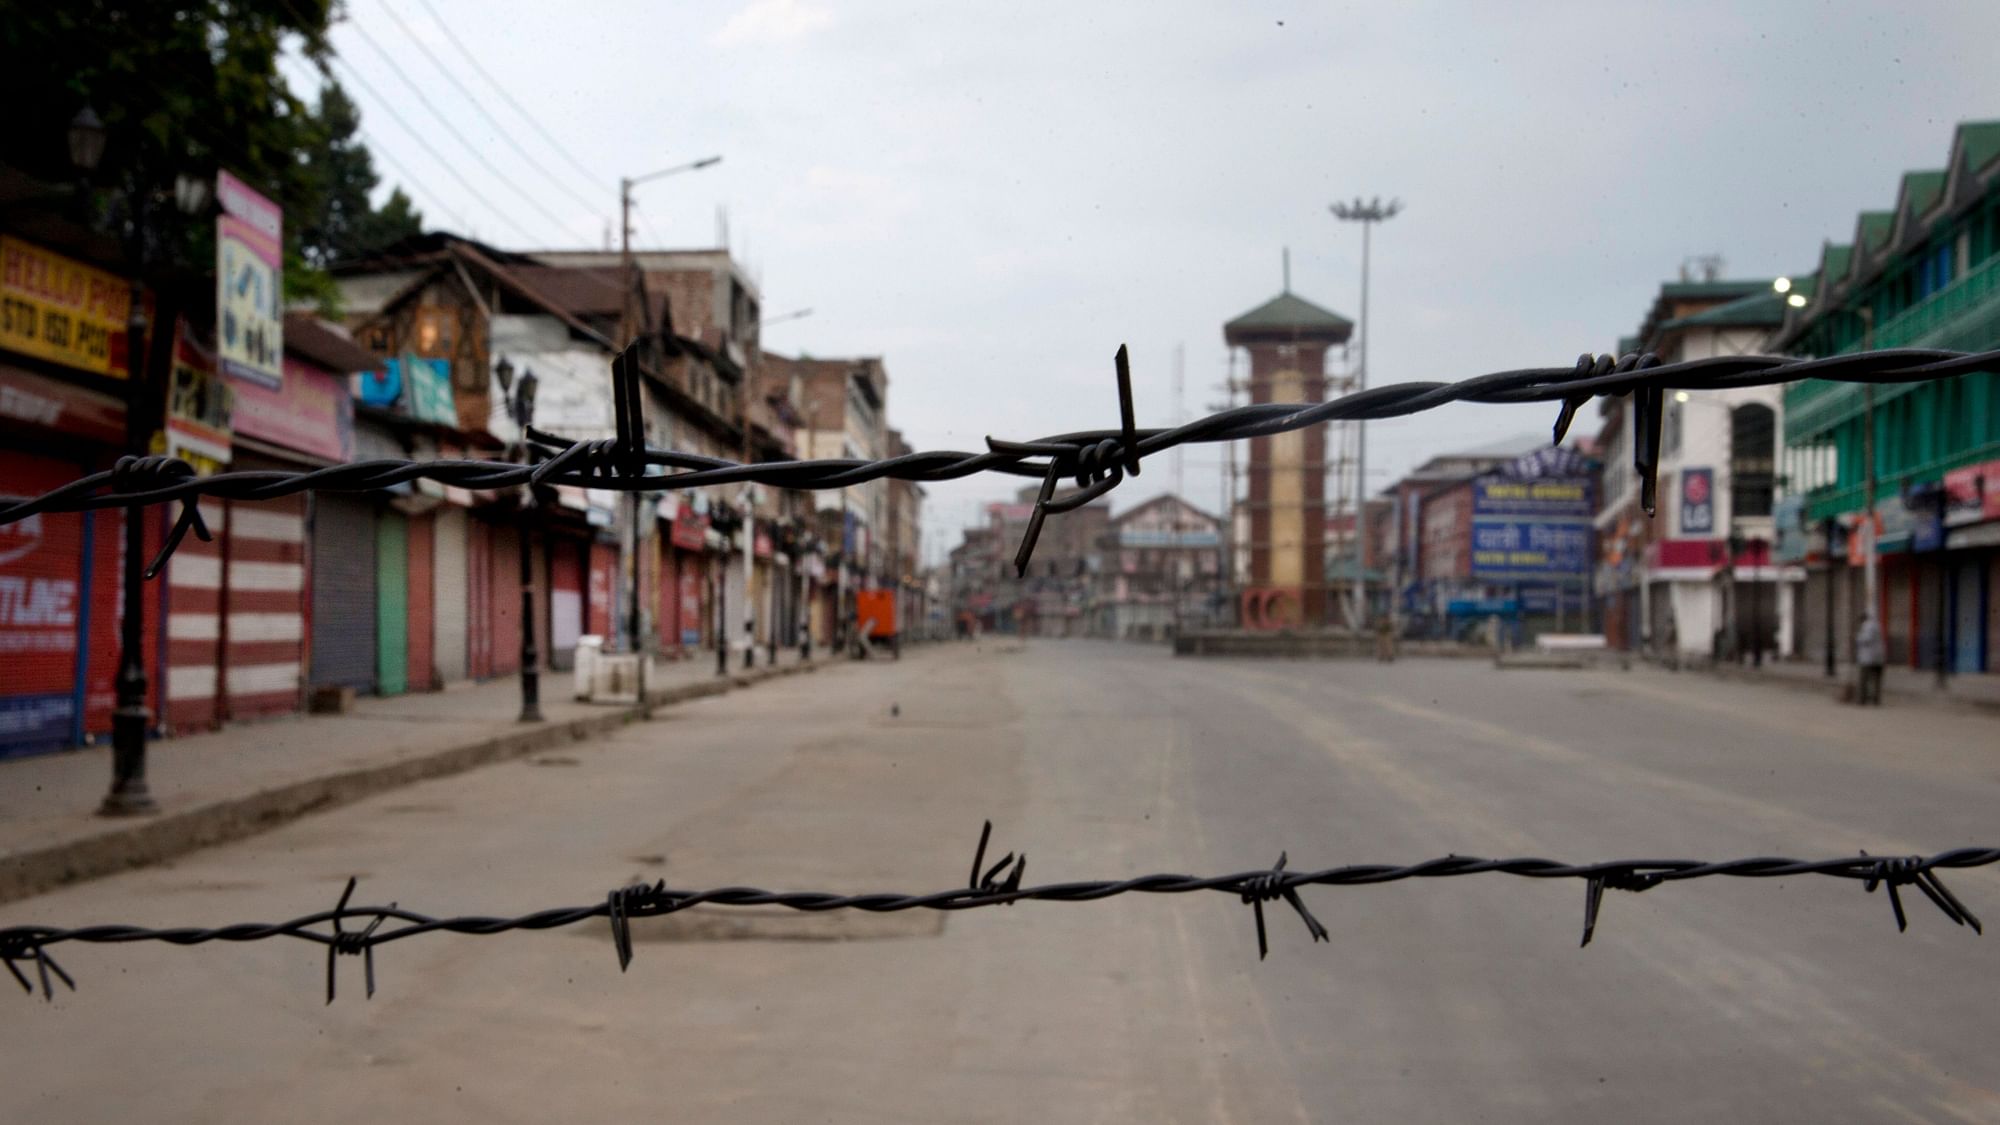 A deserted street seen through a barbwire set up as blockade during curfew in Srinagar, Kashmir